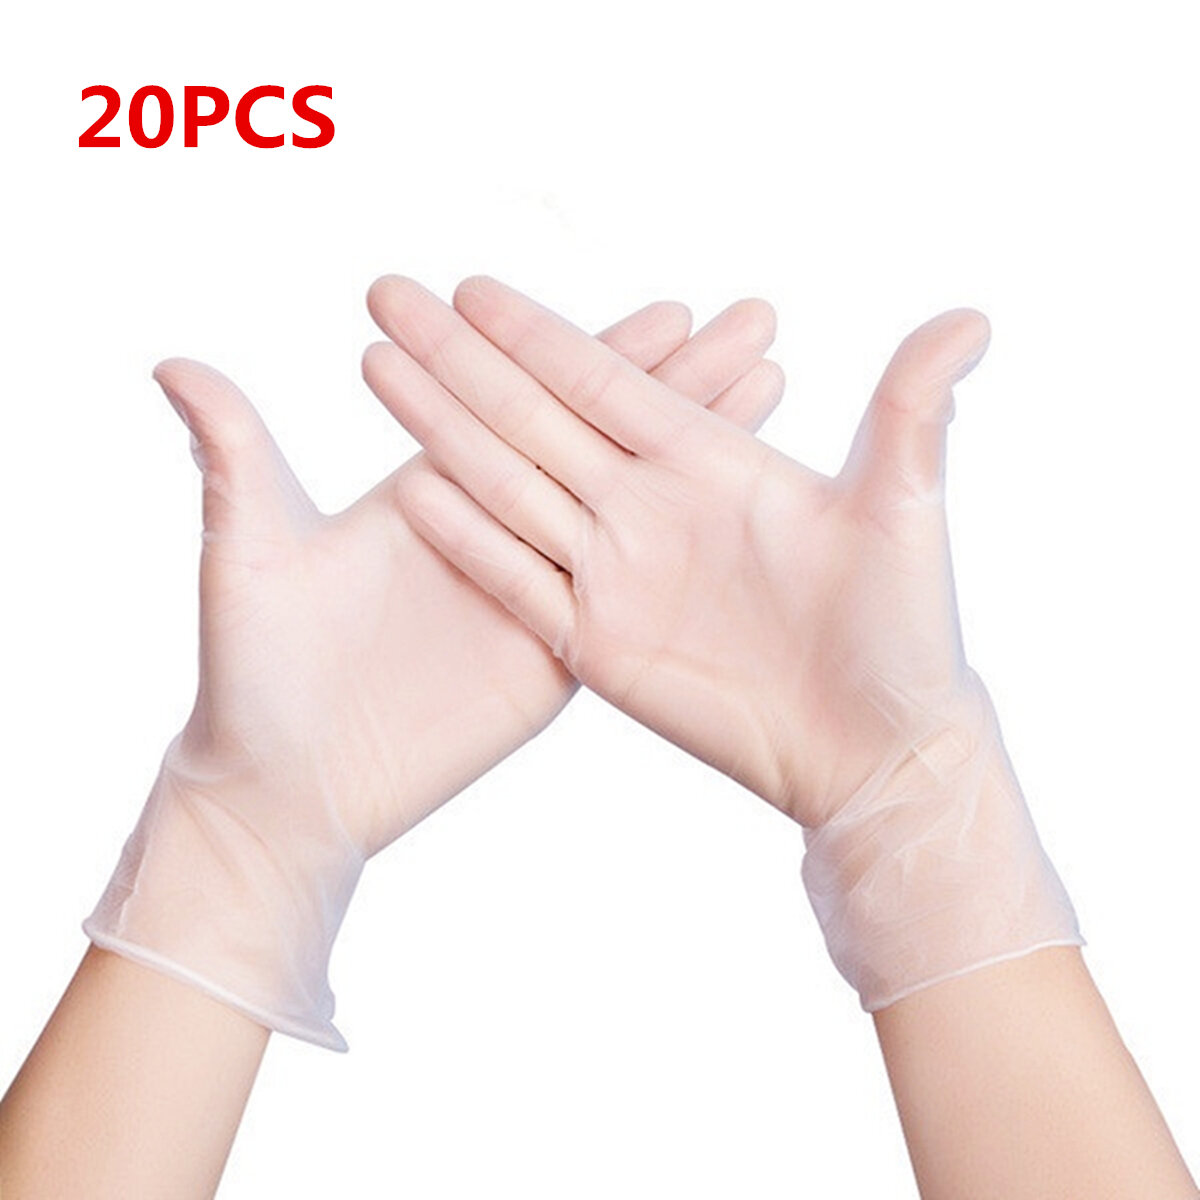 MIANDASHI 20 pièces de gants jetables en PVC pour barbecue Gants de sécurité imperméables anti-infection